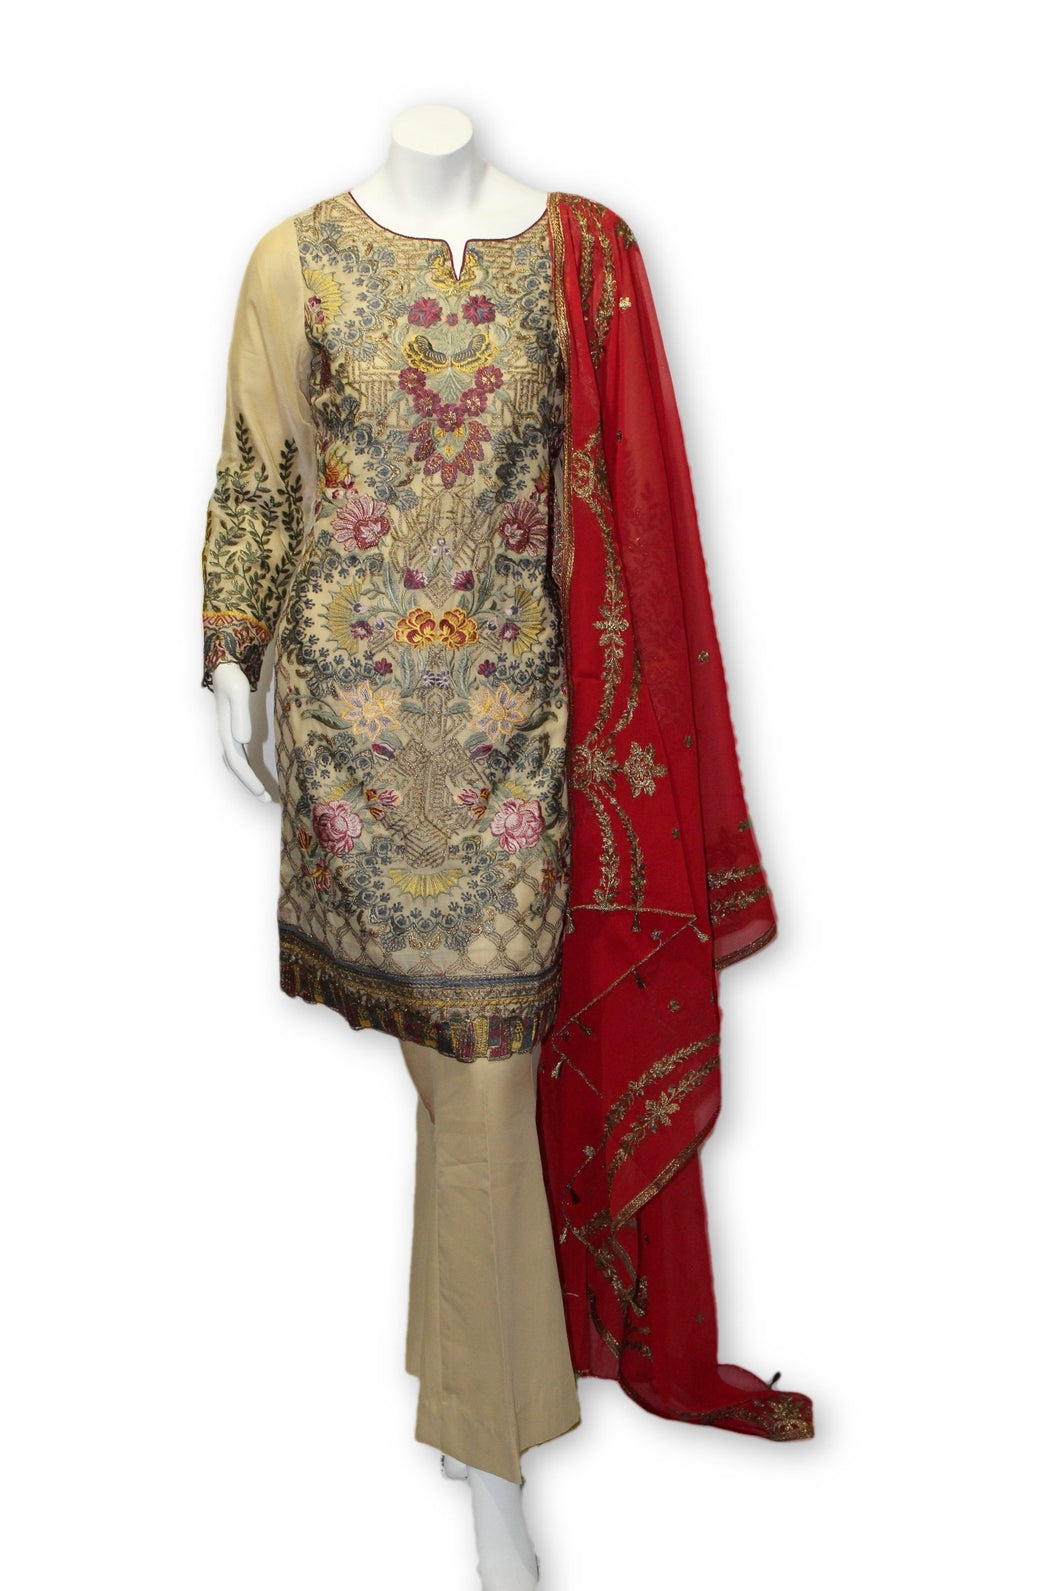 E01 Pakistani Indian 3 Pc Party Wear Chiffon Dress